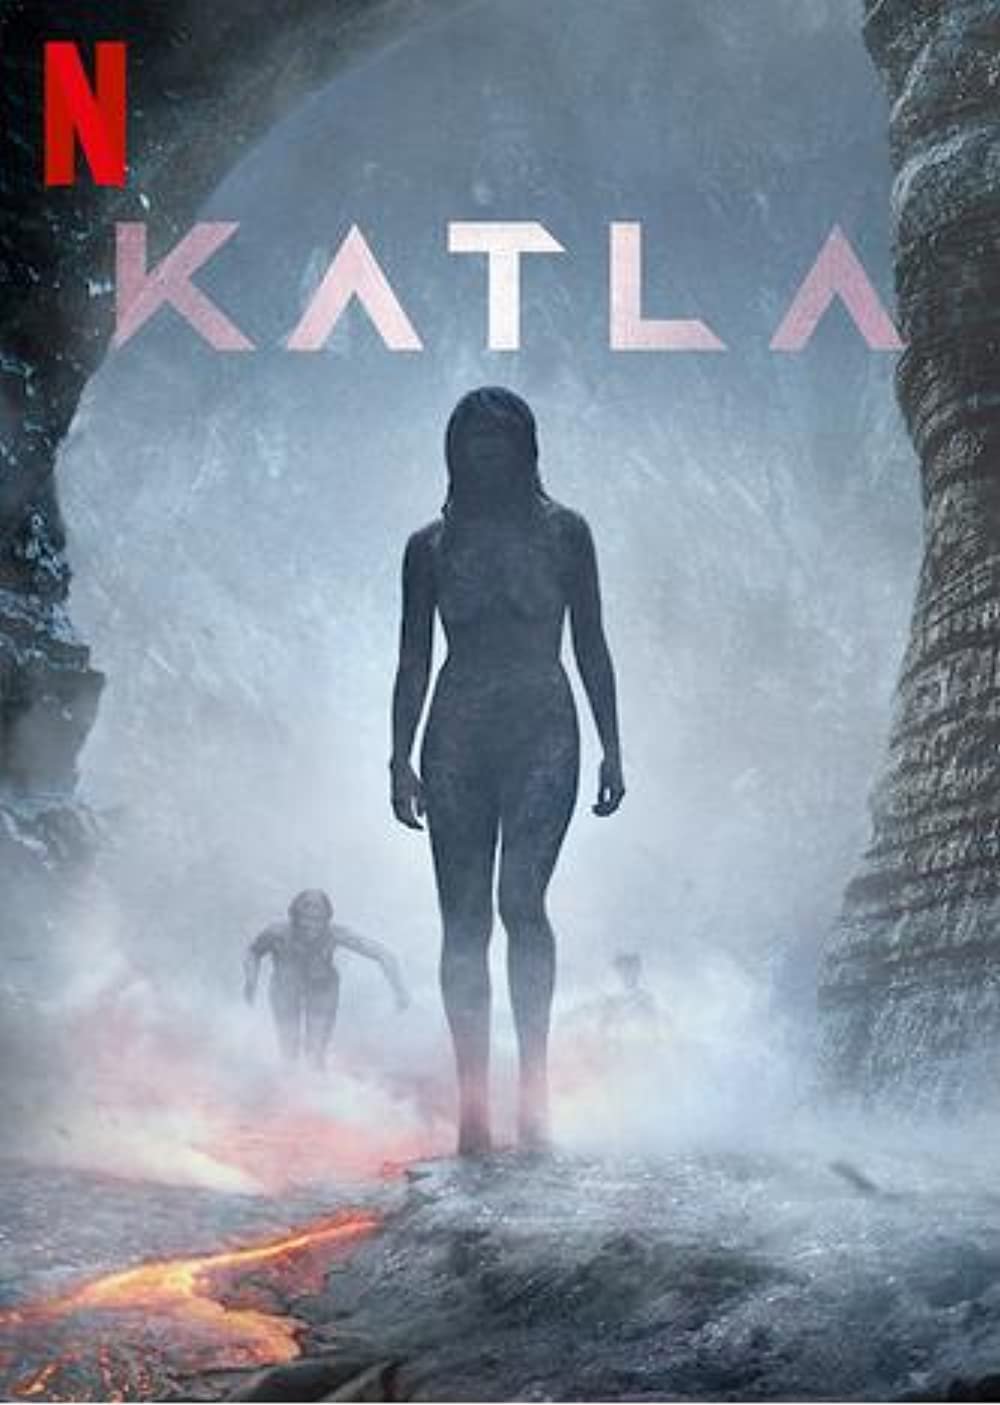 Katla | Netflix | Série escandinava de suspense sobrenatural sobre um vulcão subglacial real